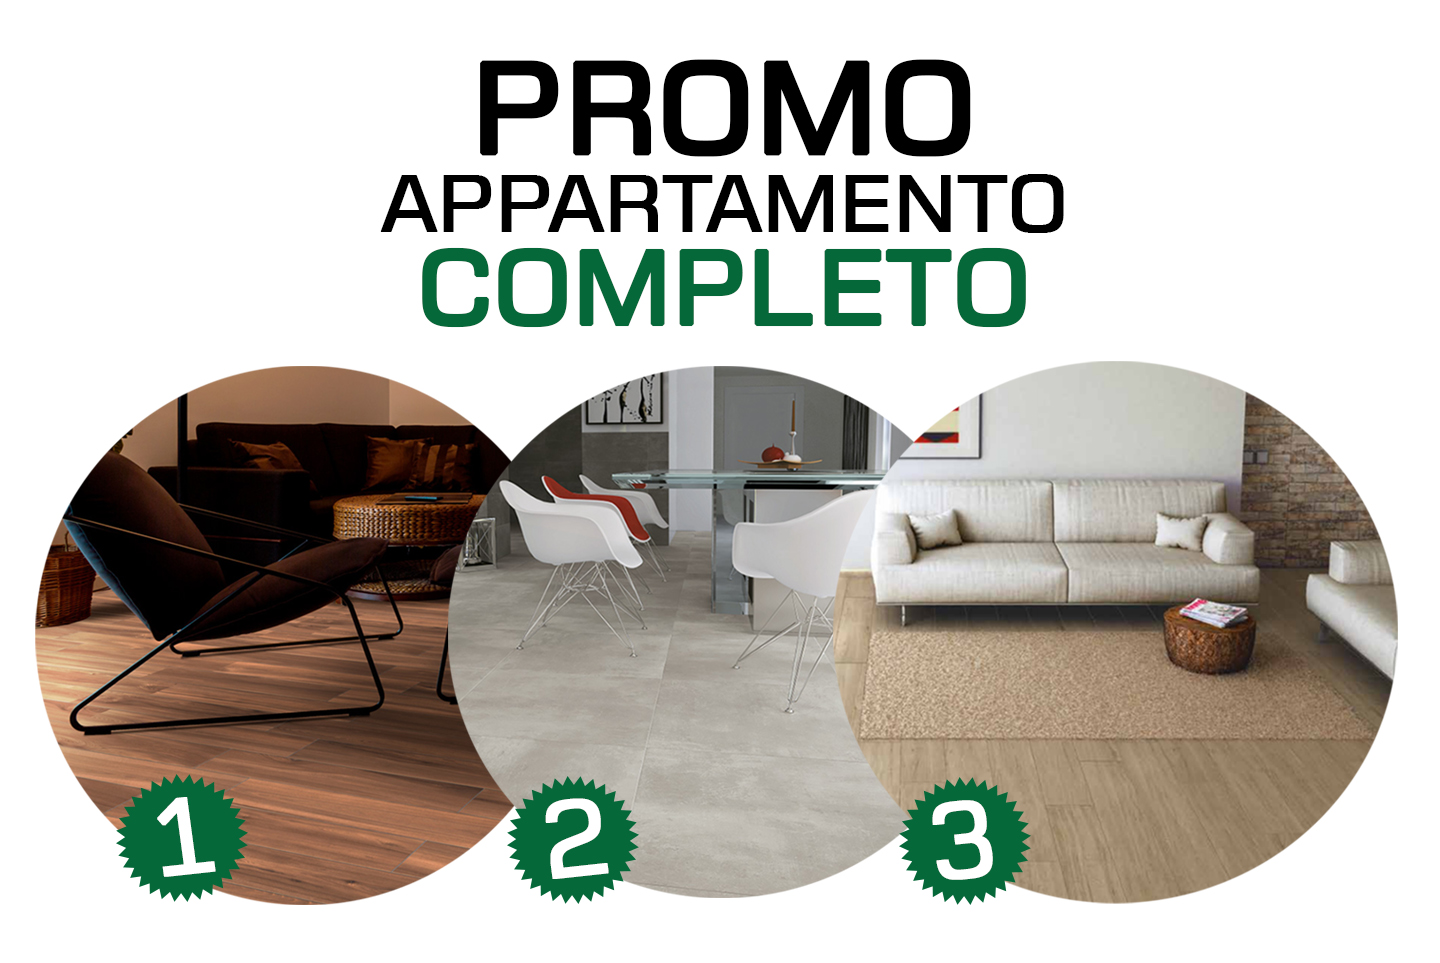 Promo appartamento completo - Made in Italy